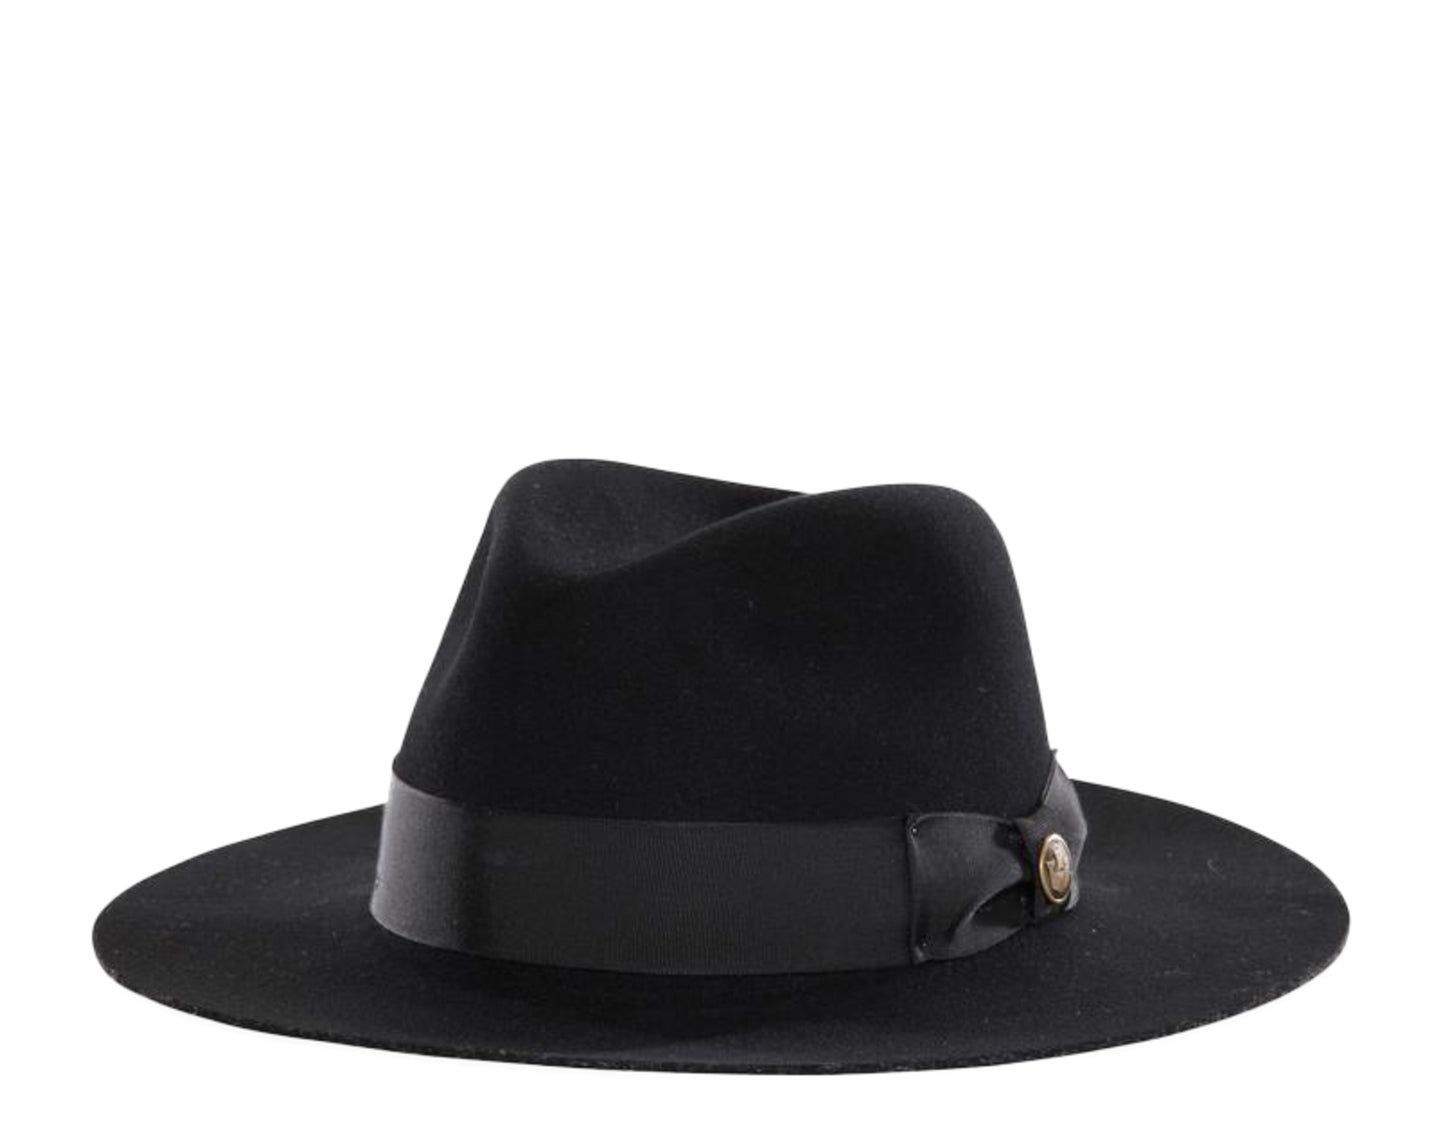 Goorin Bros Heritage County Line Fedora Black Wool Felt Men's Hat 100-3137-BLK